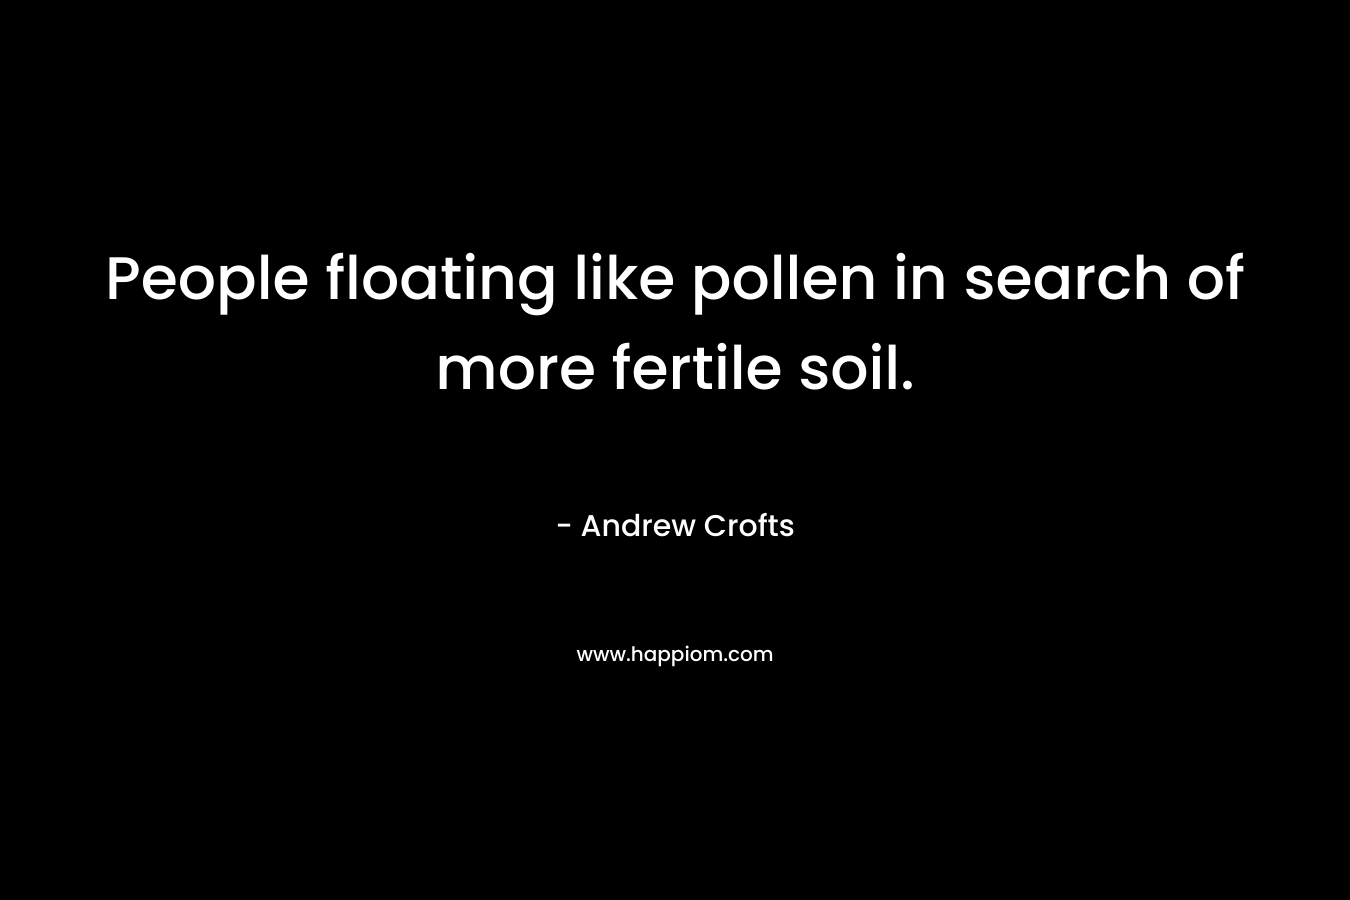 People floating like pollen in search of more fertile soil.